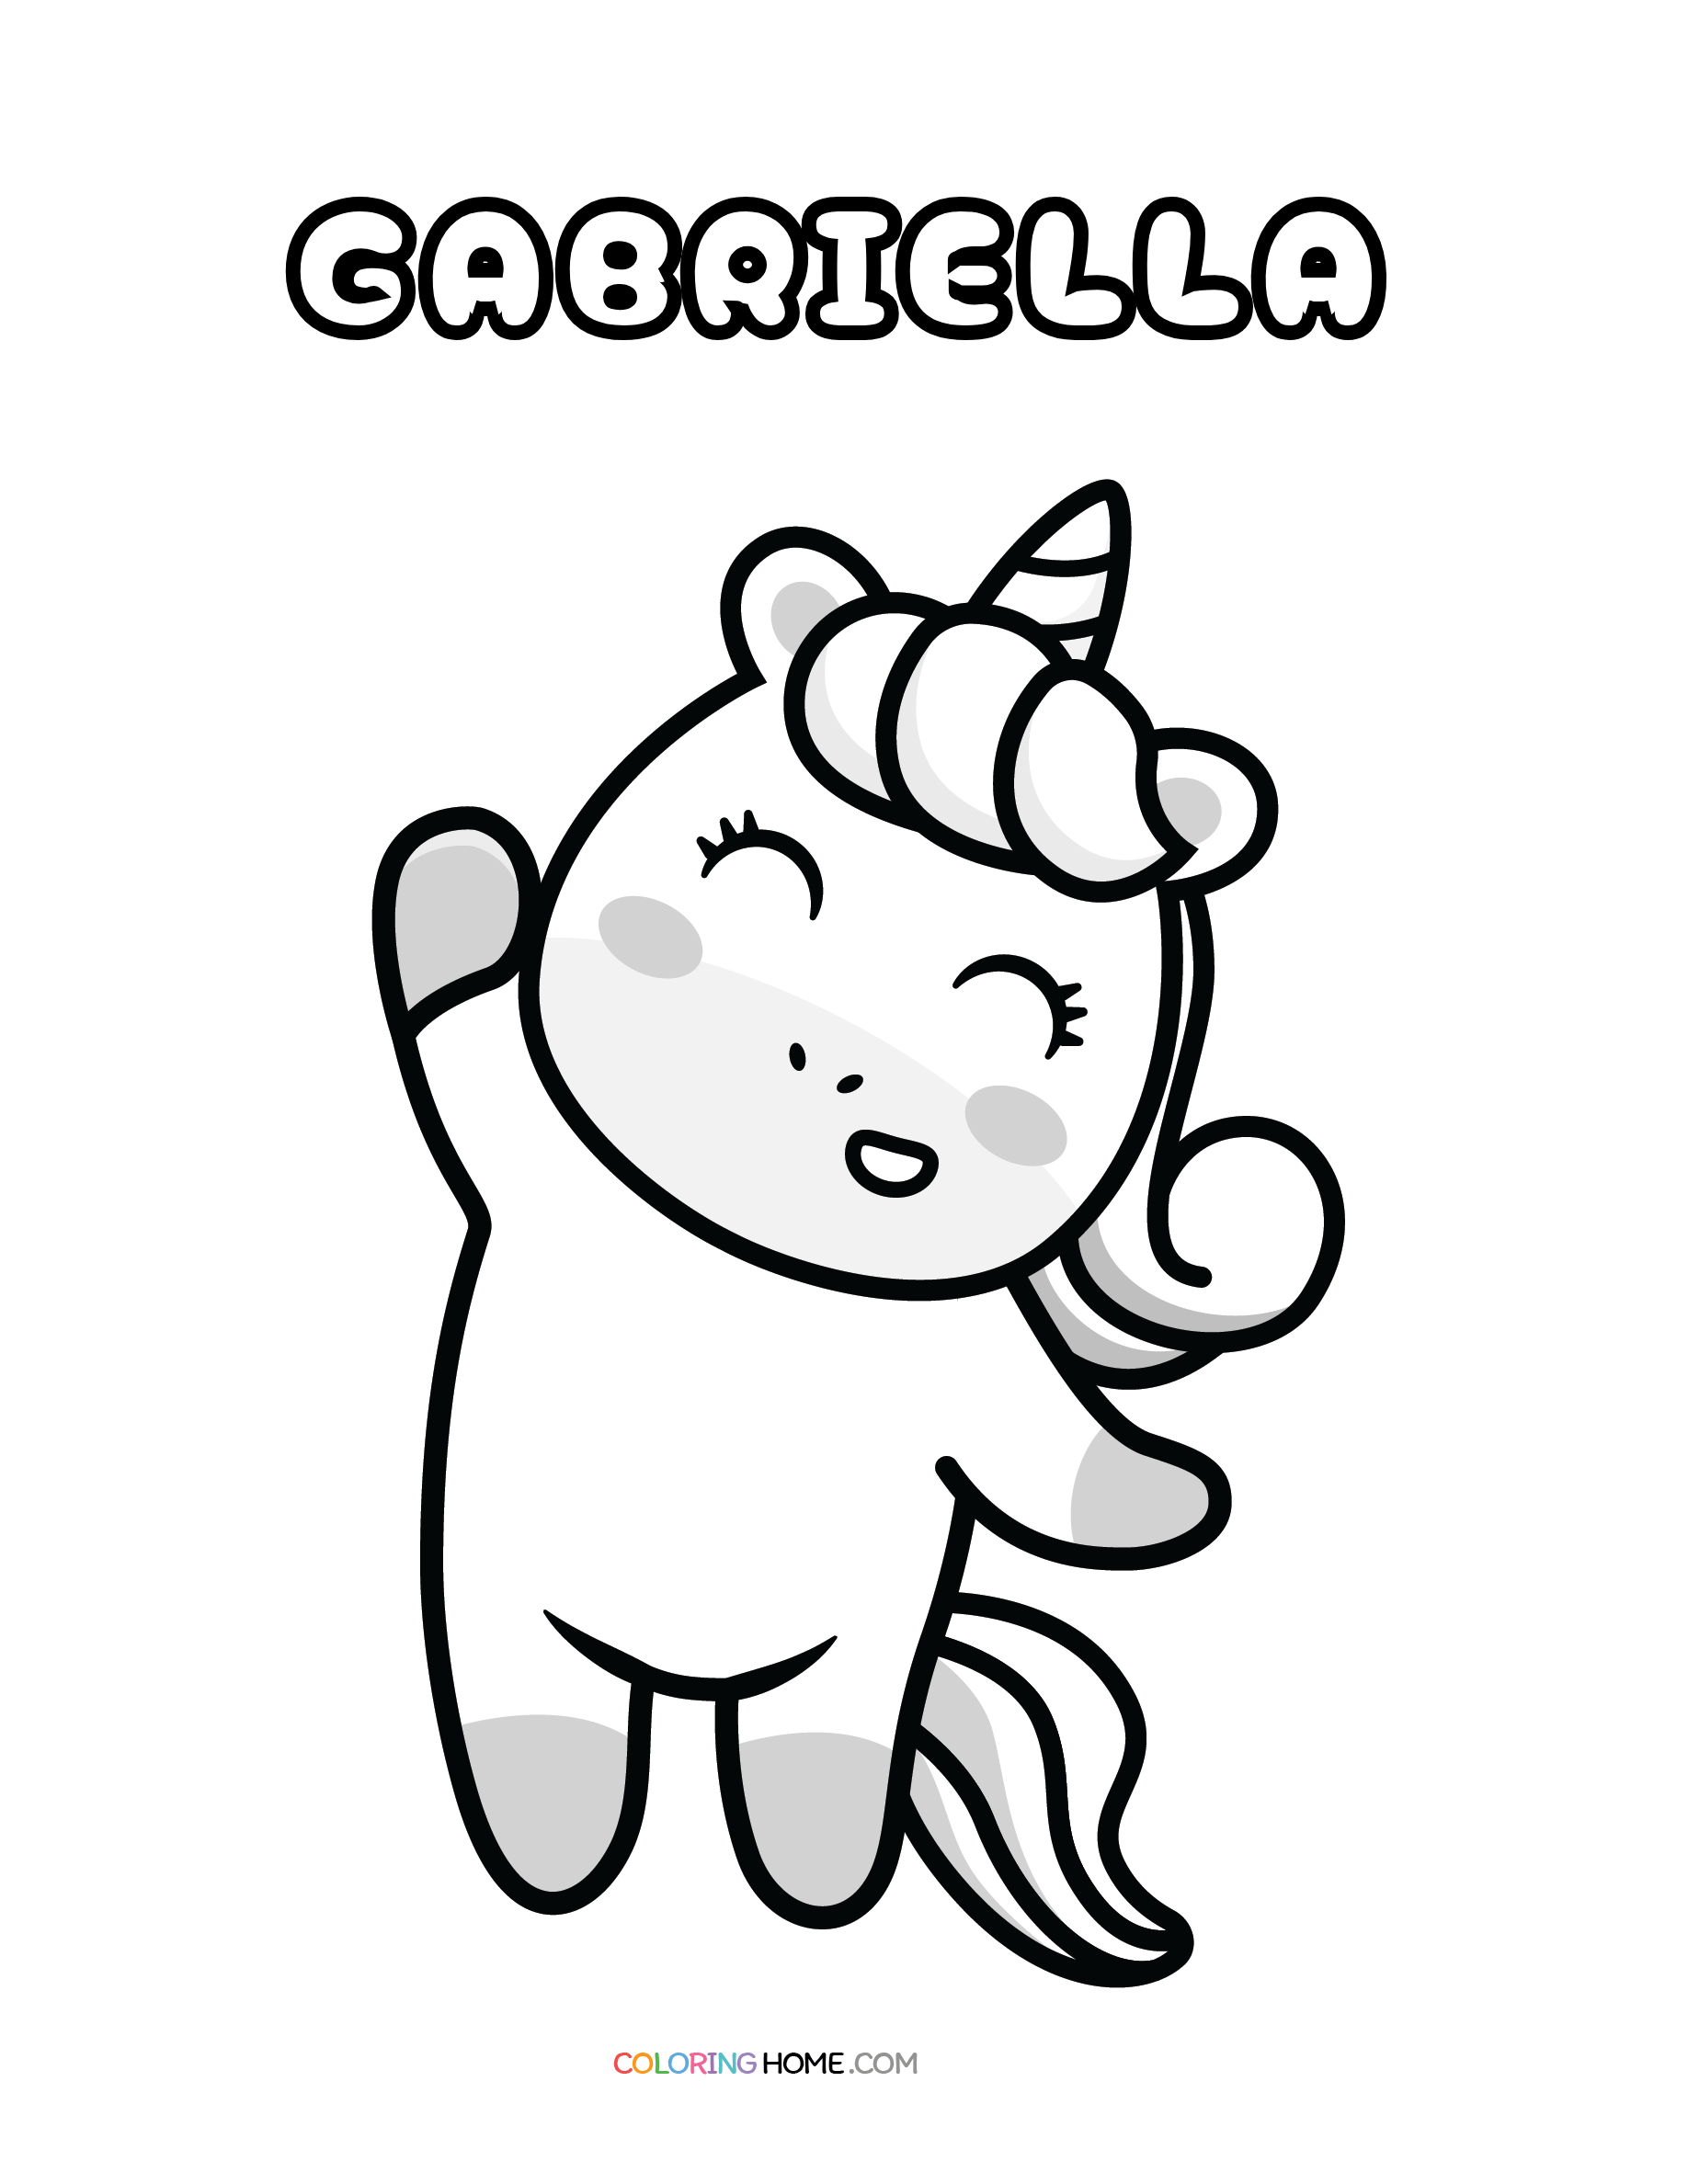 Gabriella unicorn coloring page